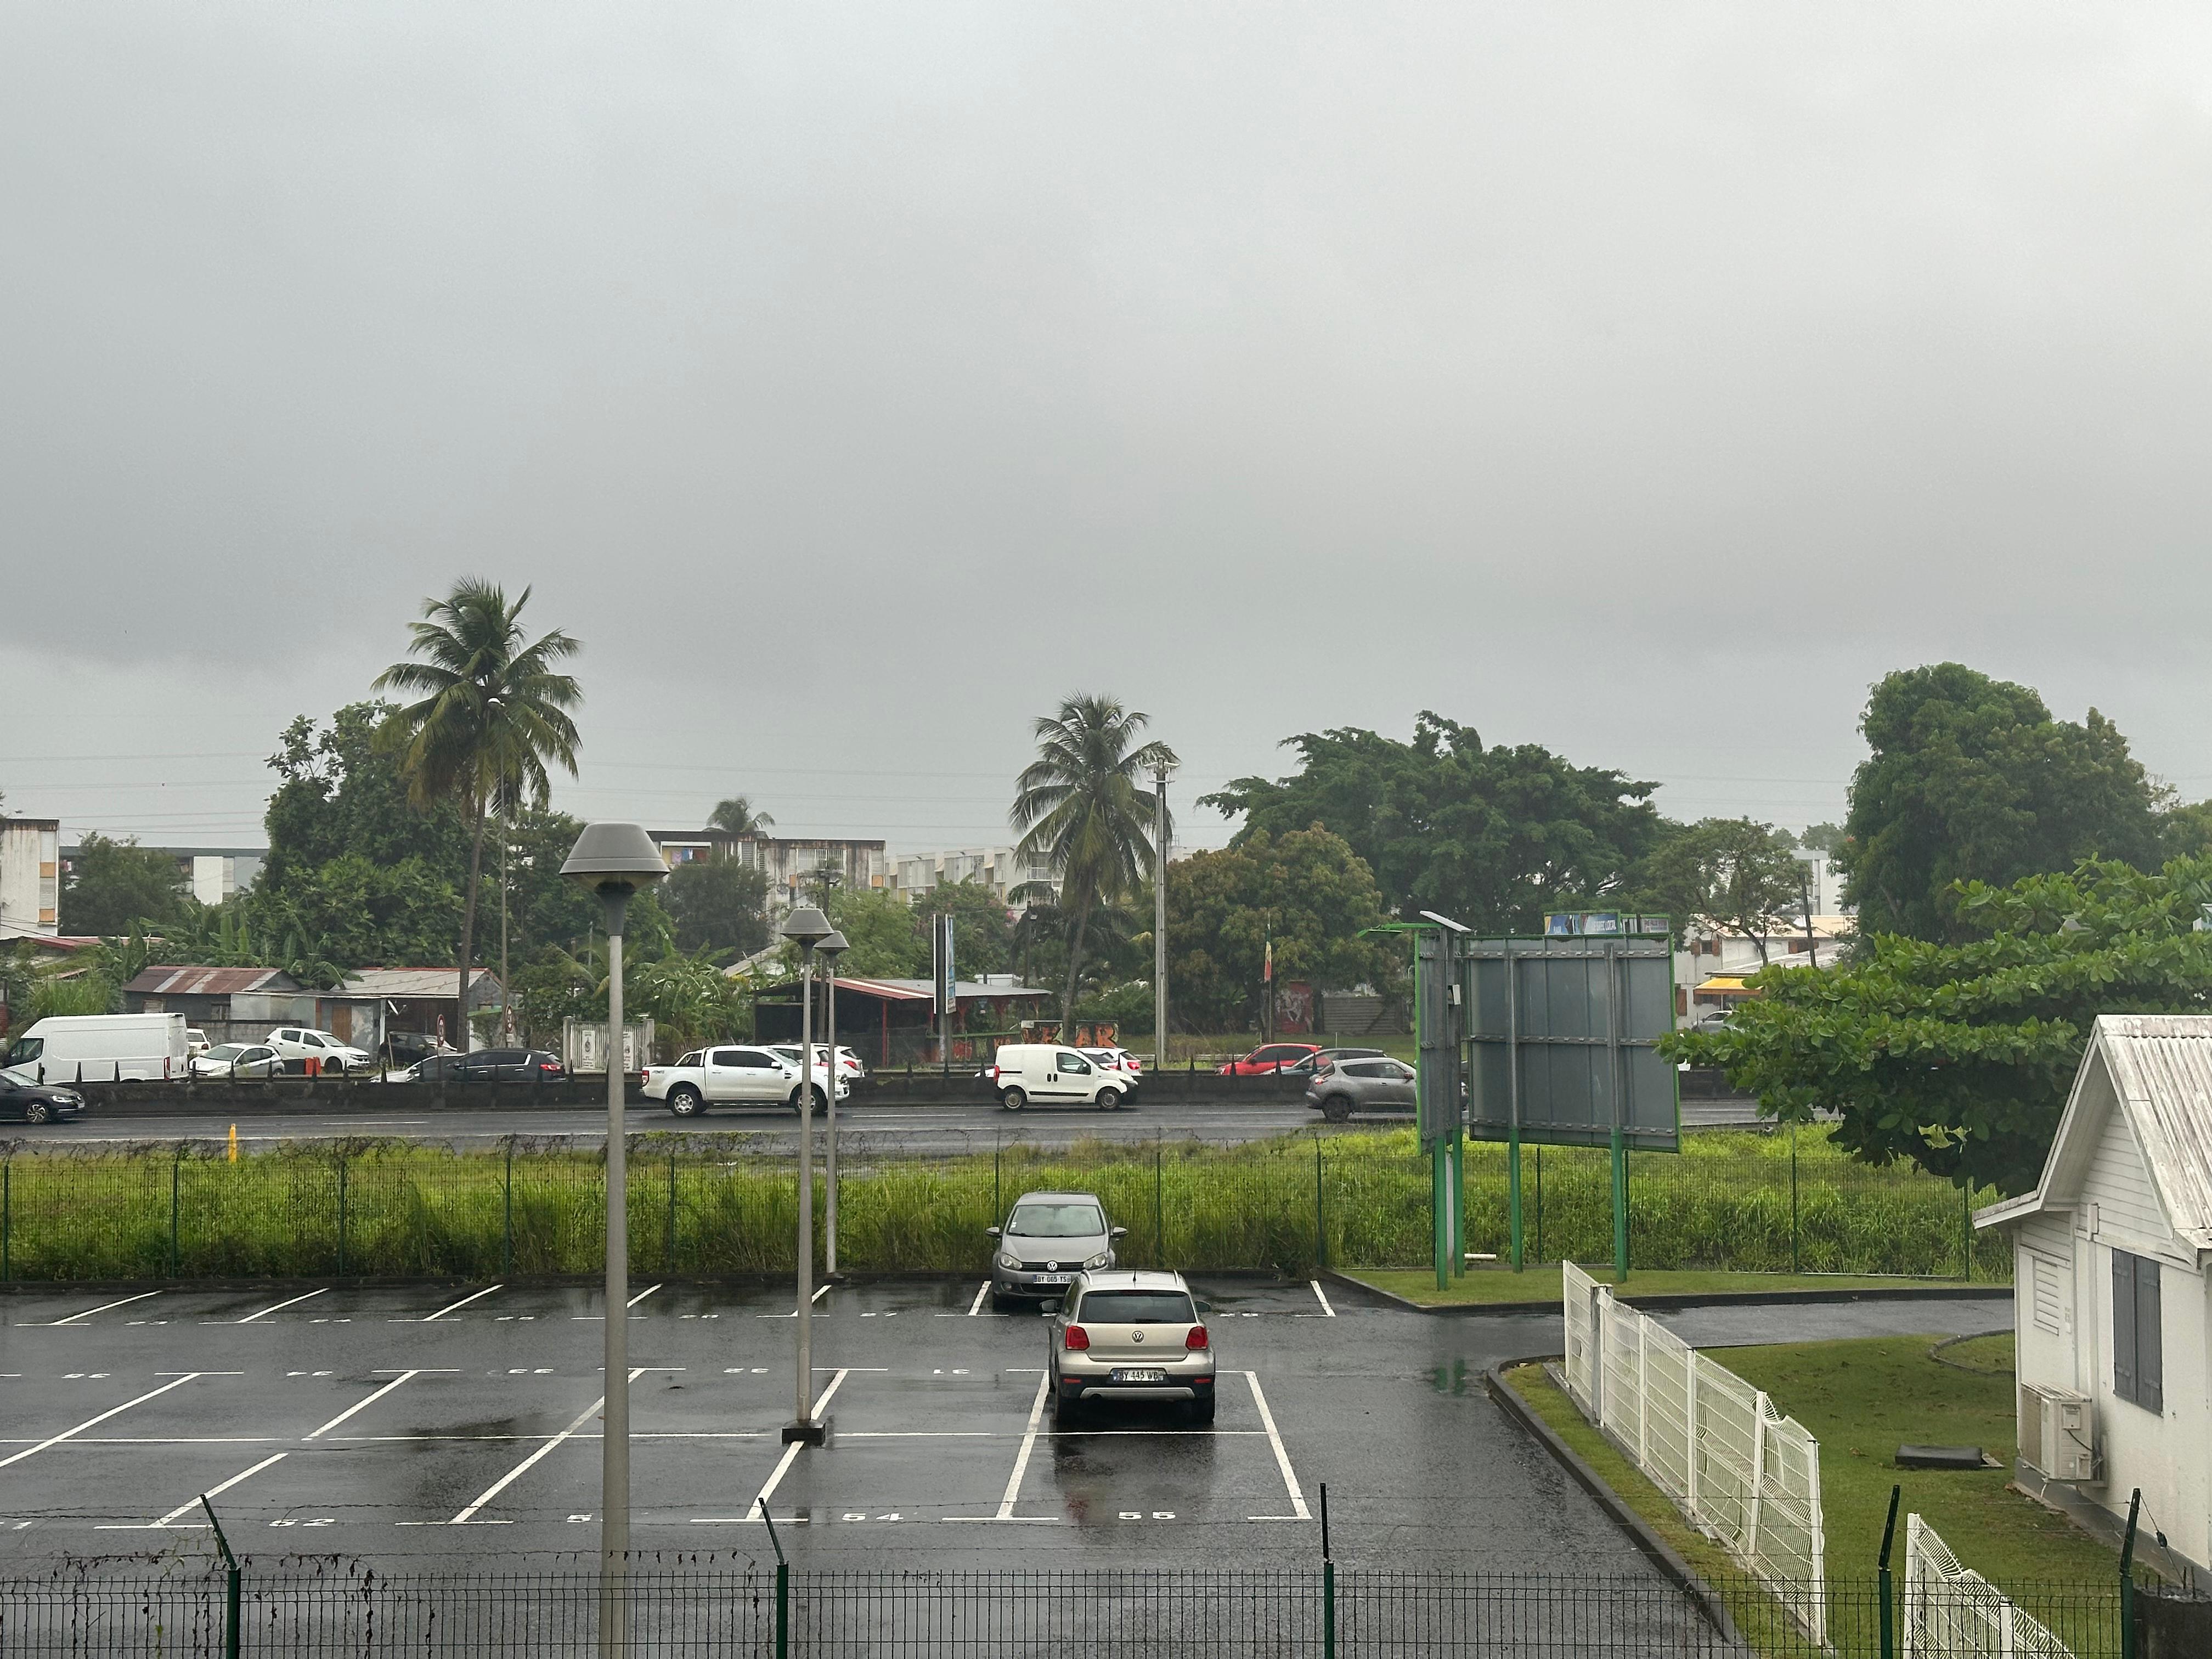     Onde tropicale : de fortes précipitations attendues

